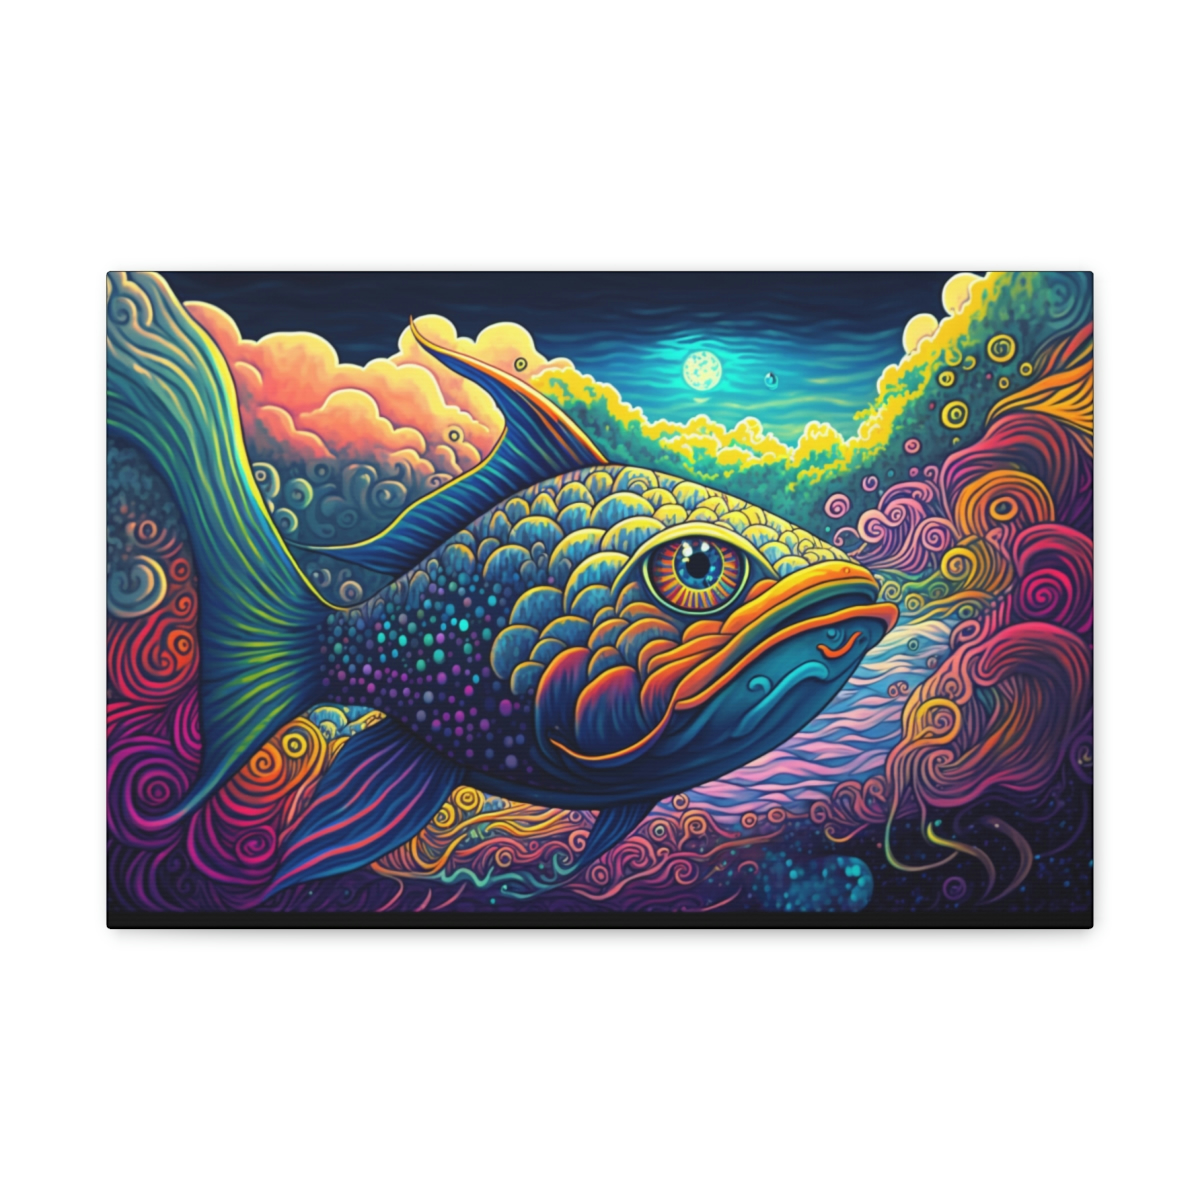 Trippy Art Canvas Print: Aquatic Dreamscape